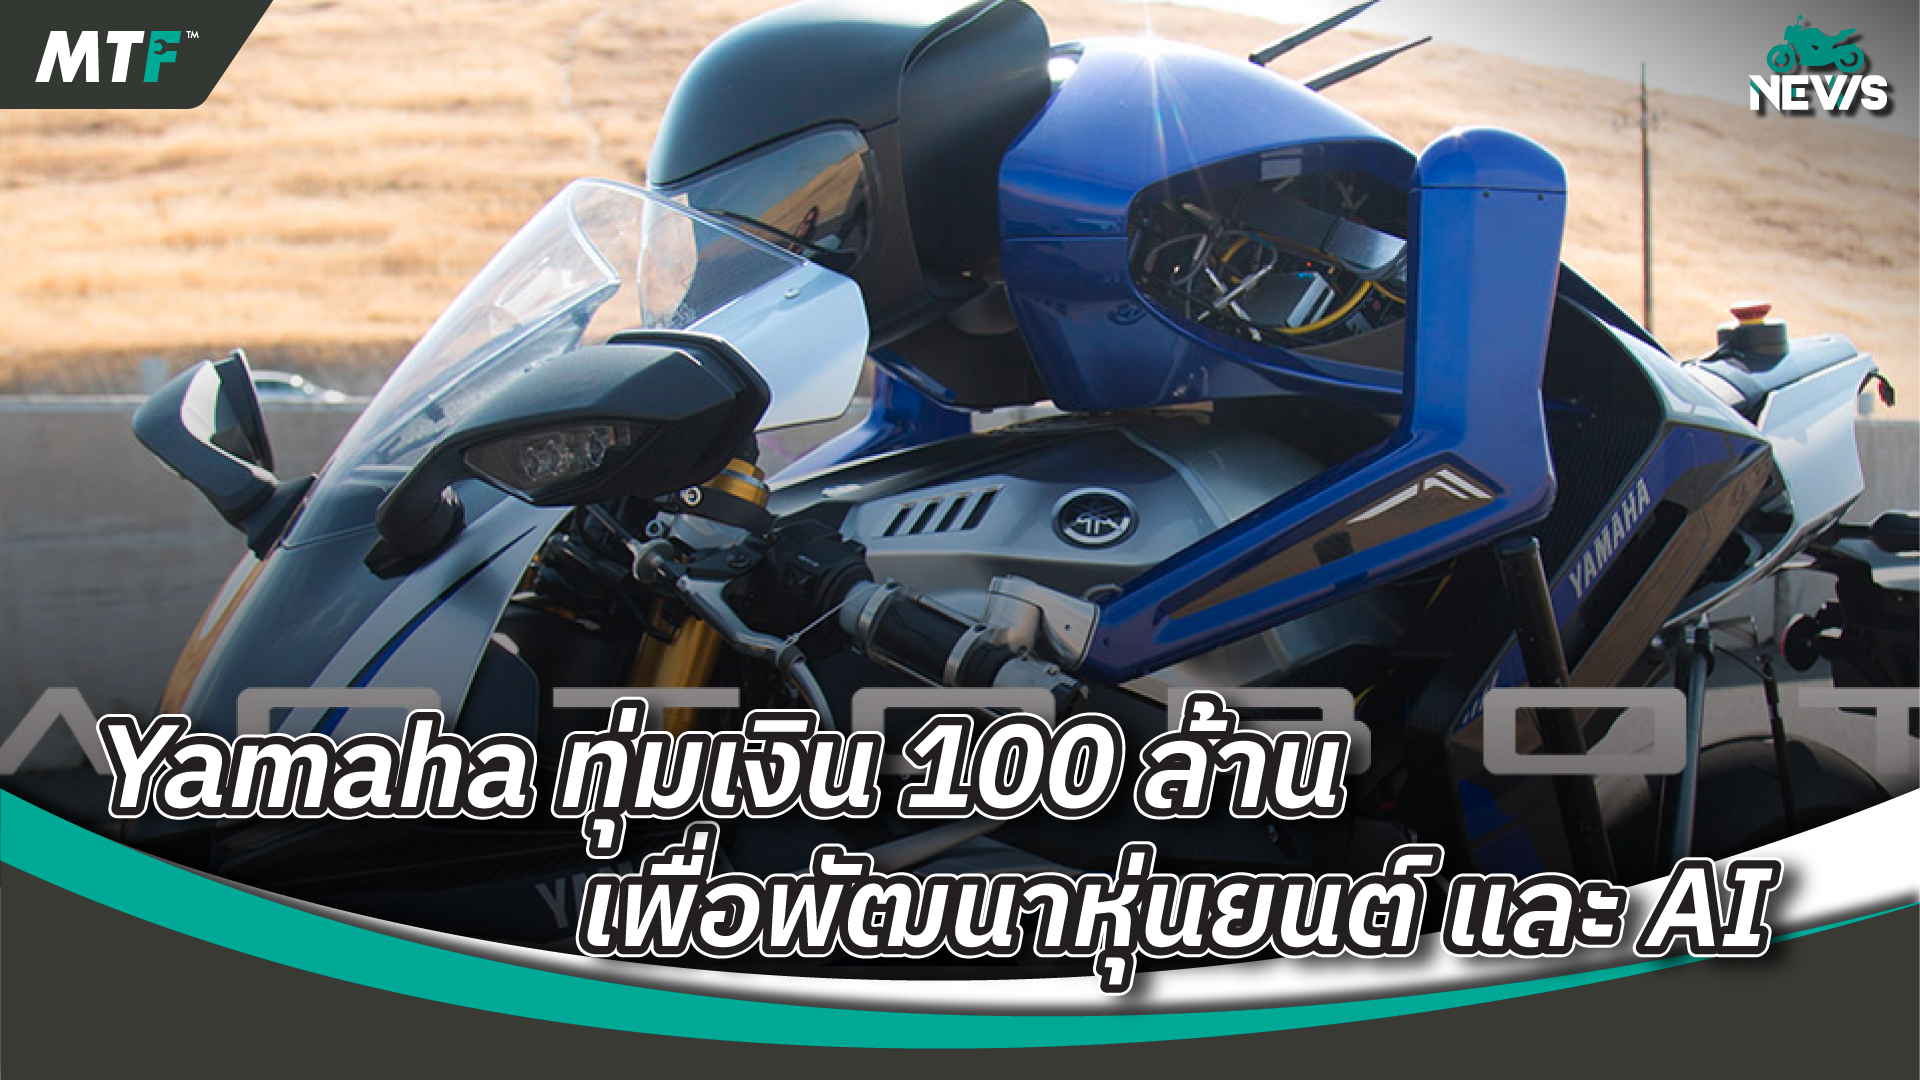 Yamaha Motor จัดตั้งแผนกใหม่ เน้นวิจัยพัฒนาสำรวจเทคโนโลยีใหม่